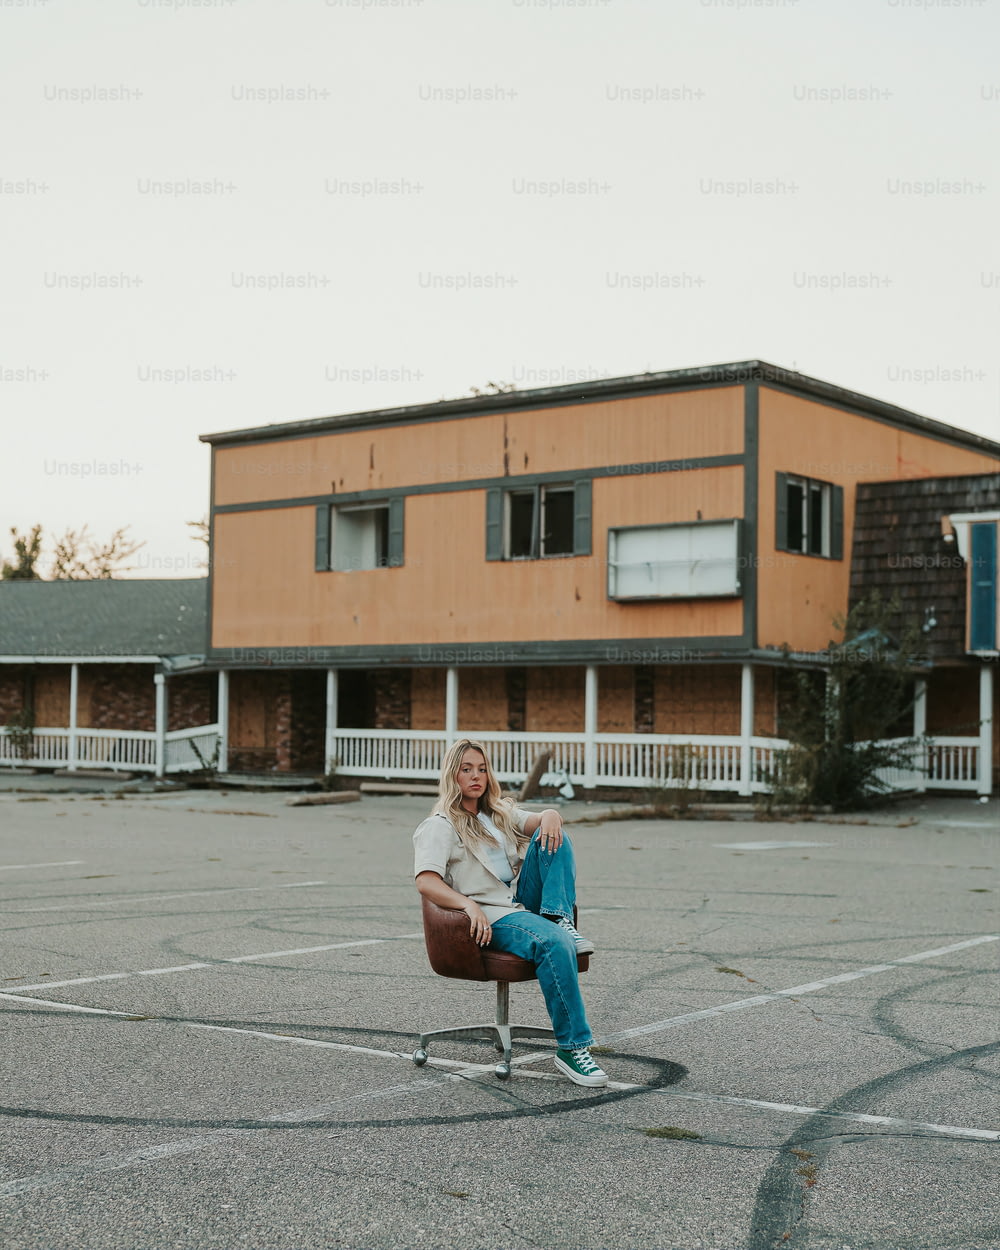 uma mulher sentada em uma cadeira em um estacionamento